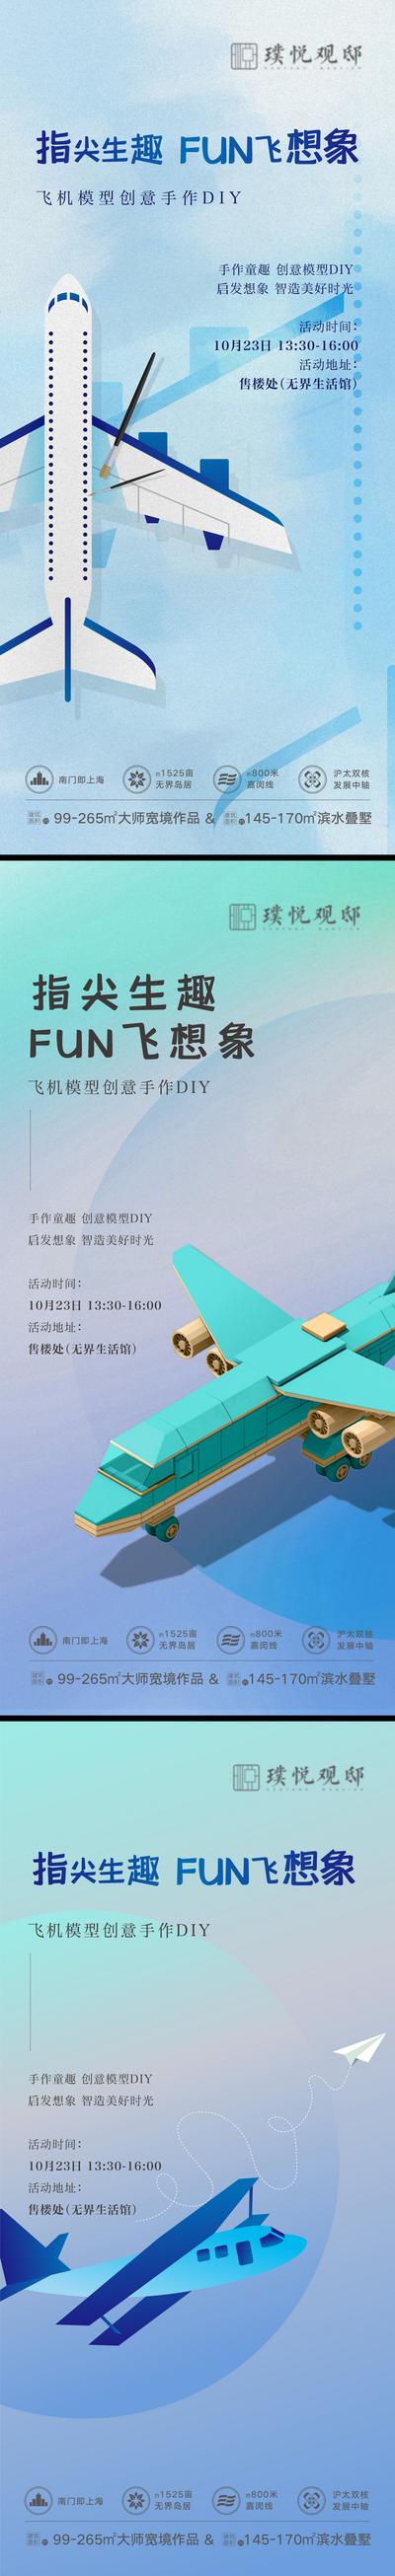 南门网 房地产飞机模型DI海报Y